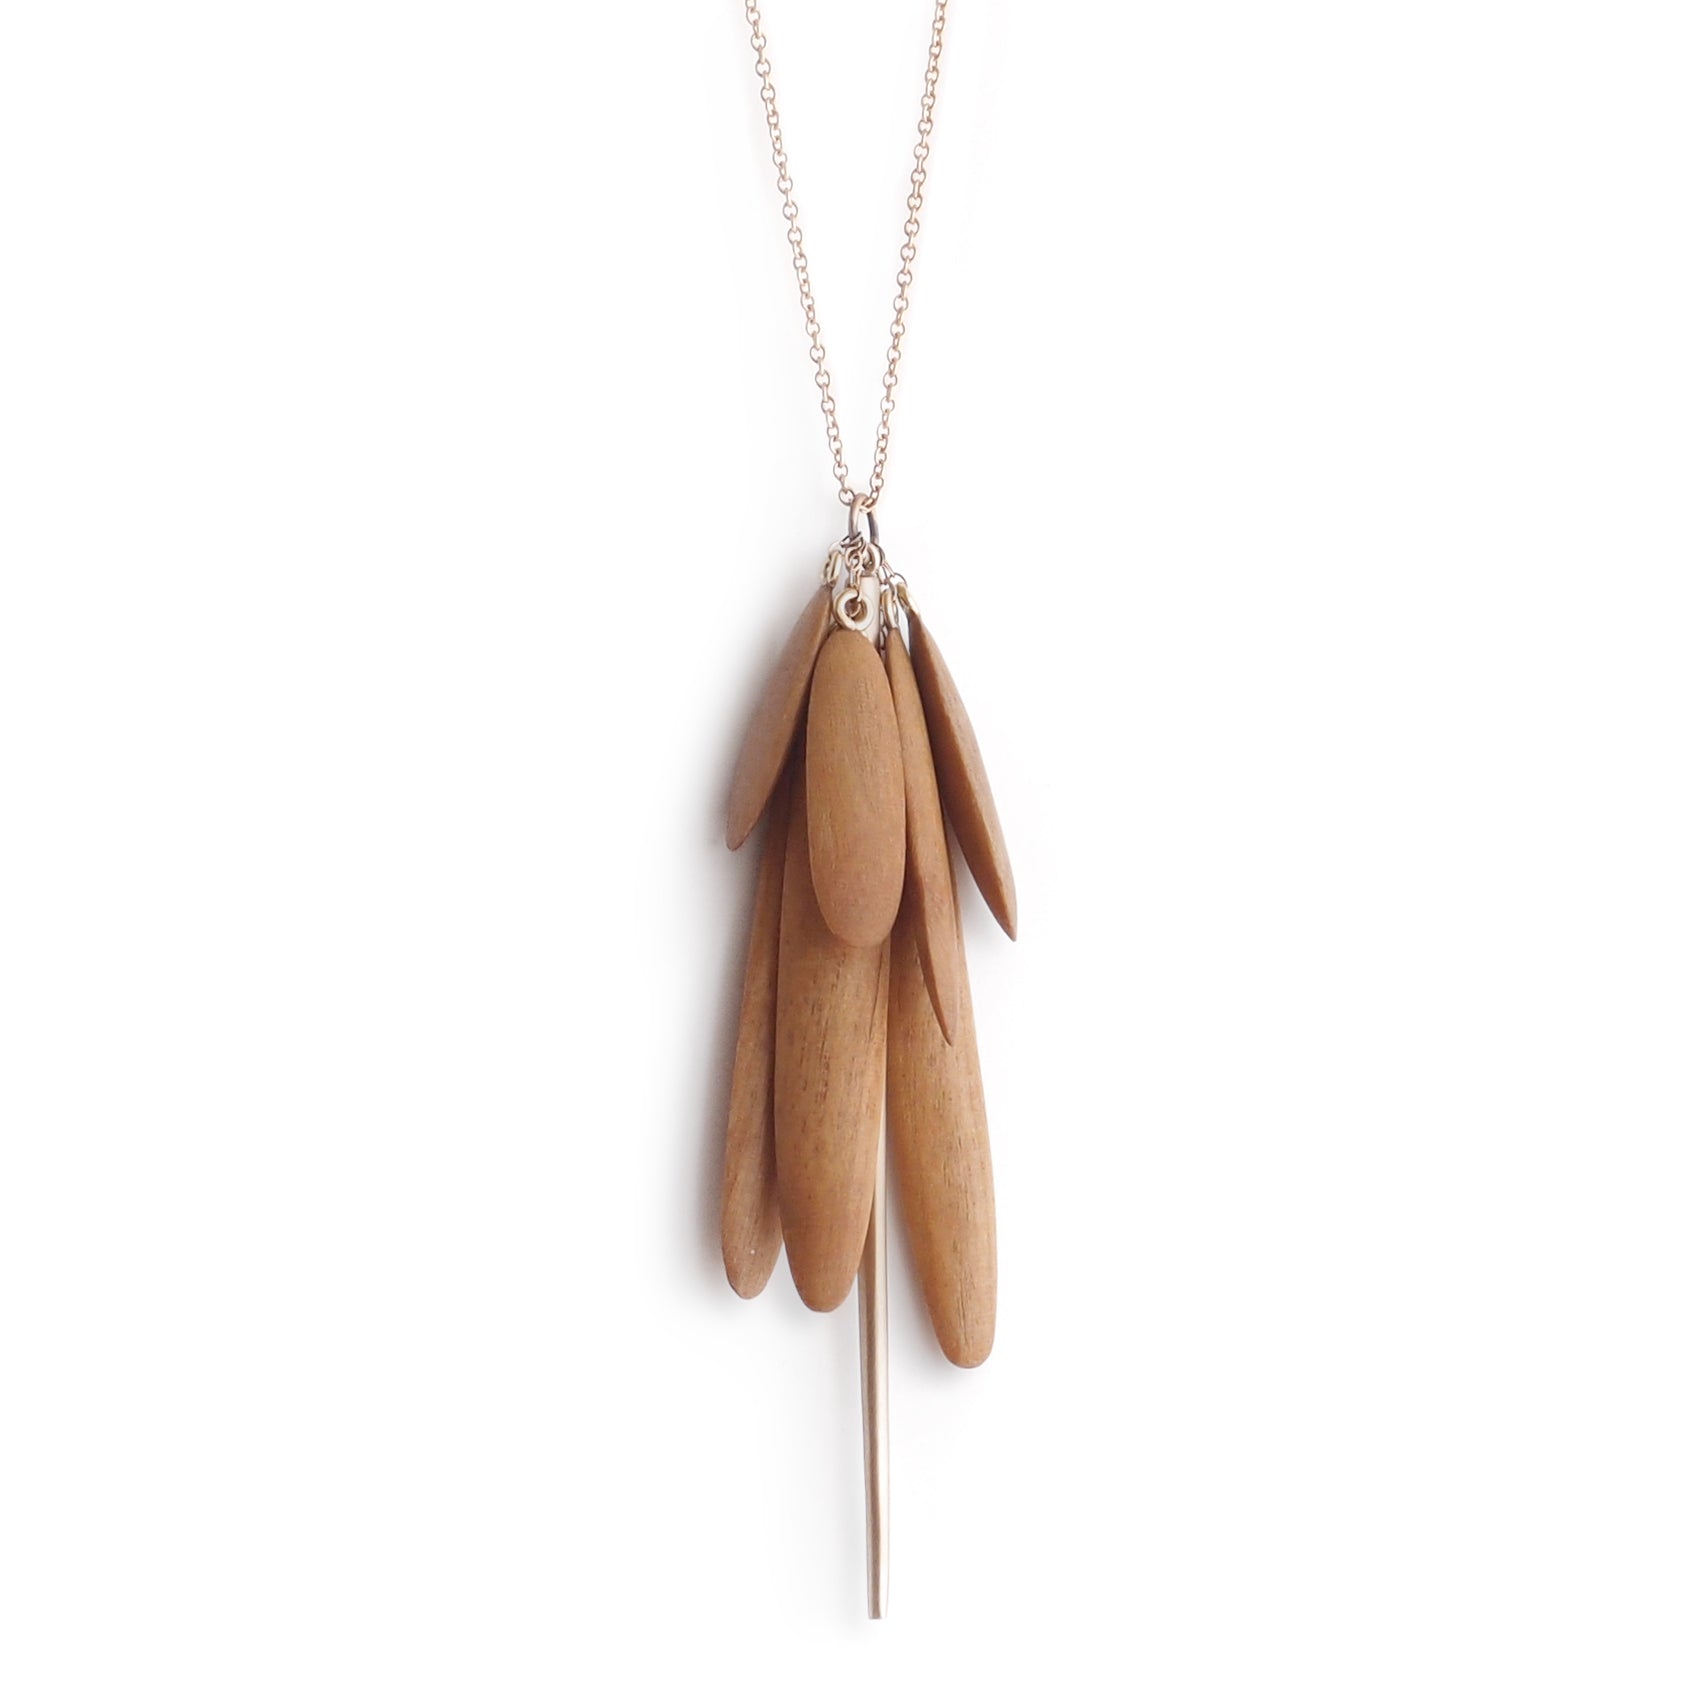 satinwood/bronze wood tassle & spicula necklace